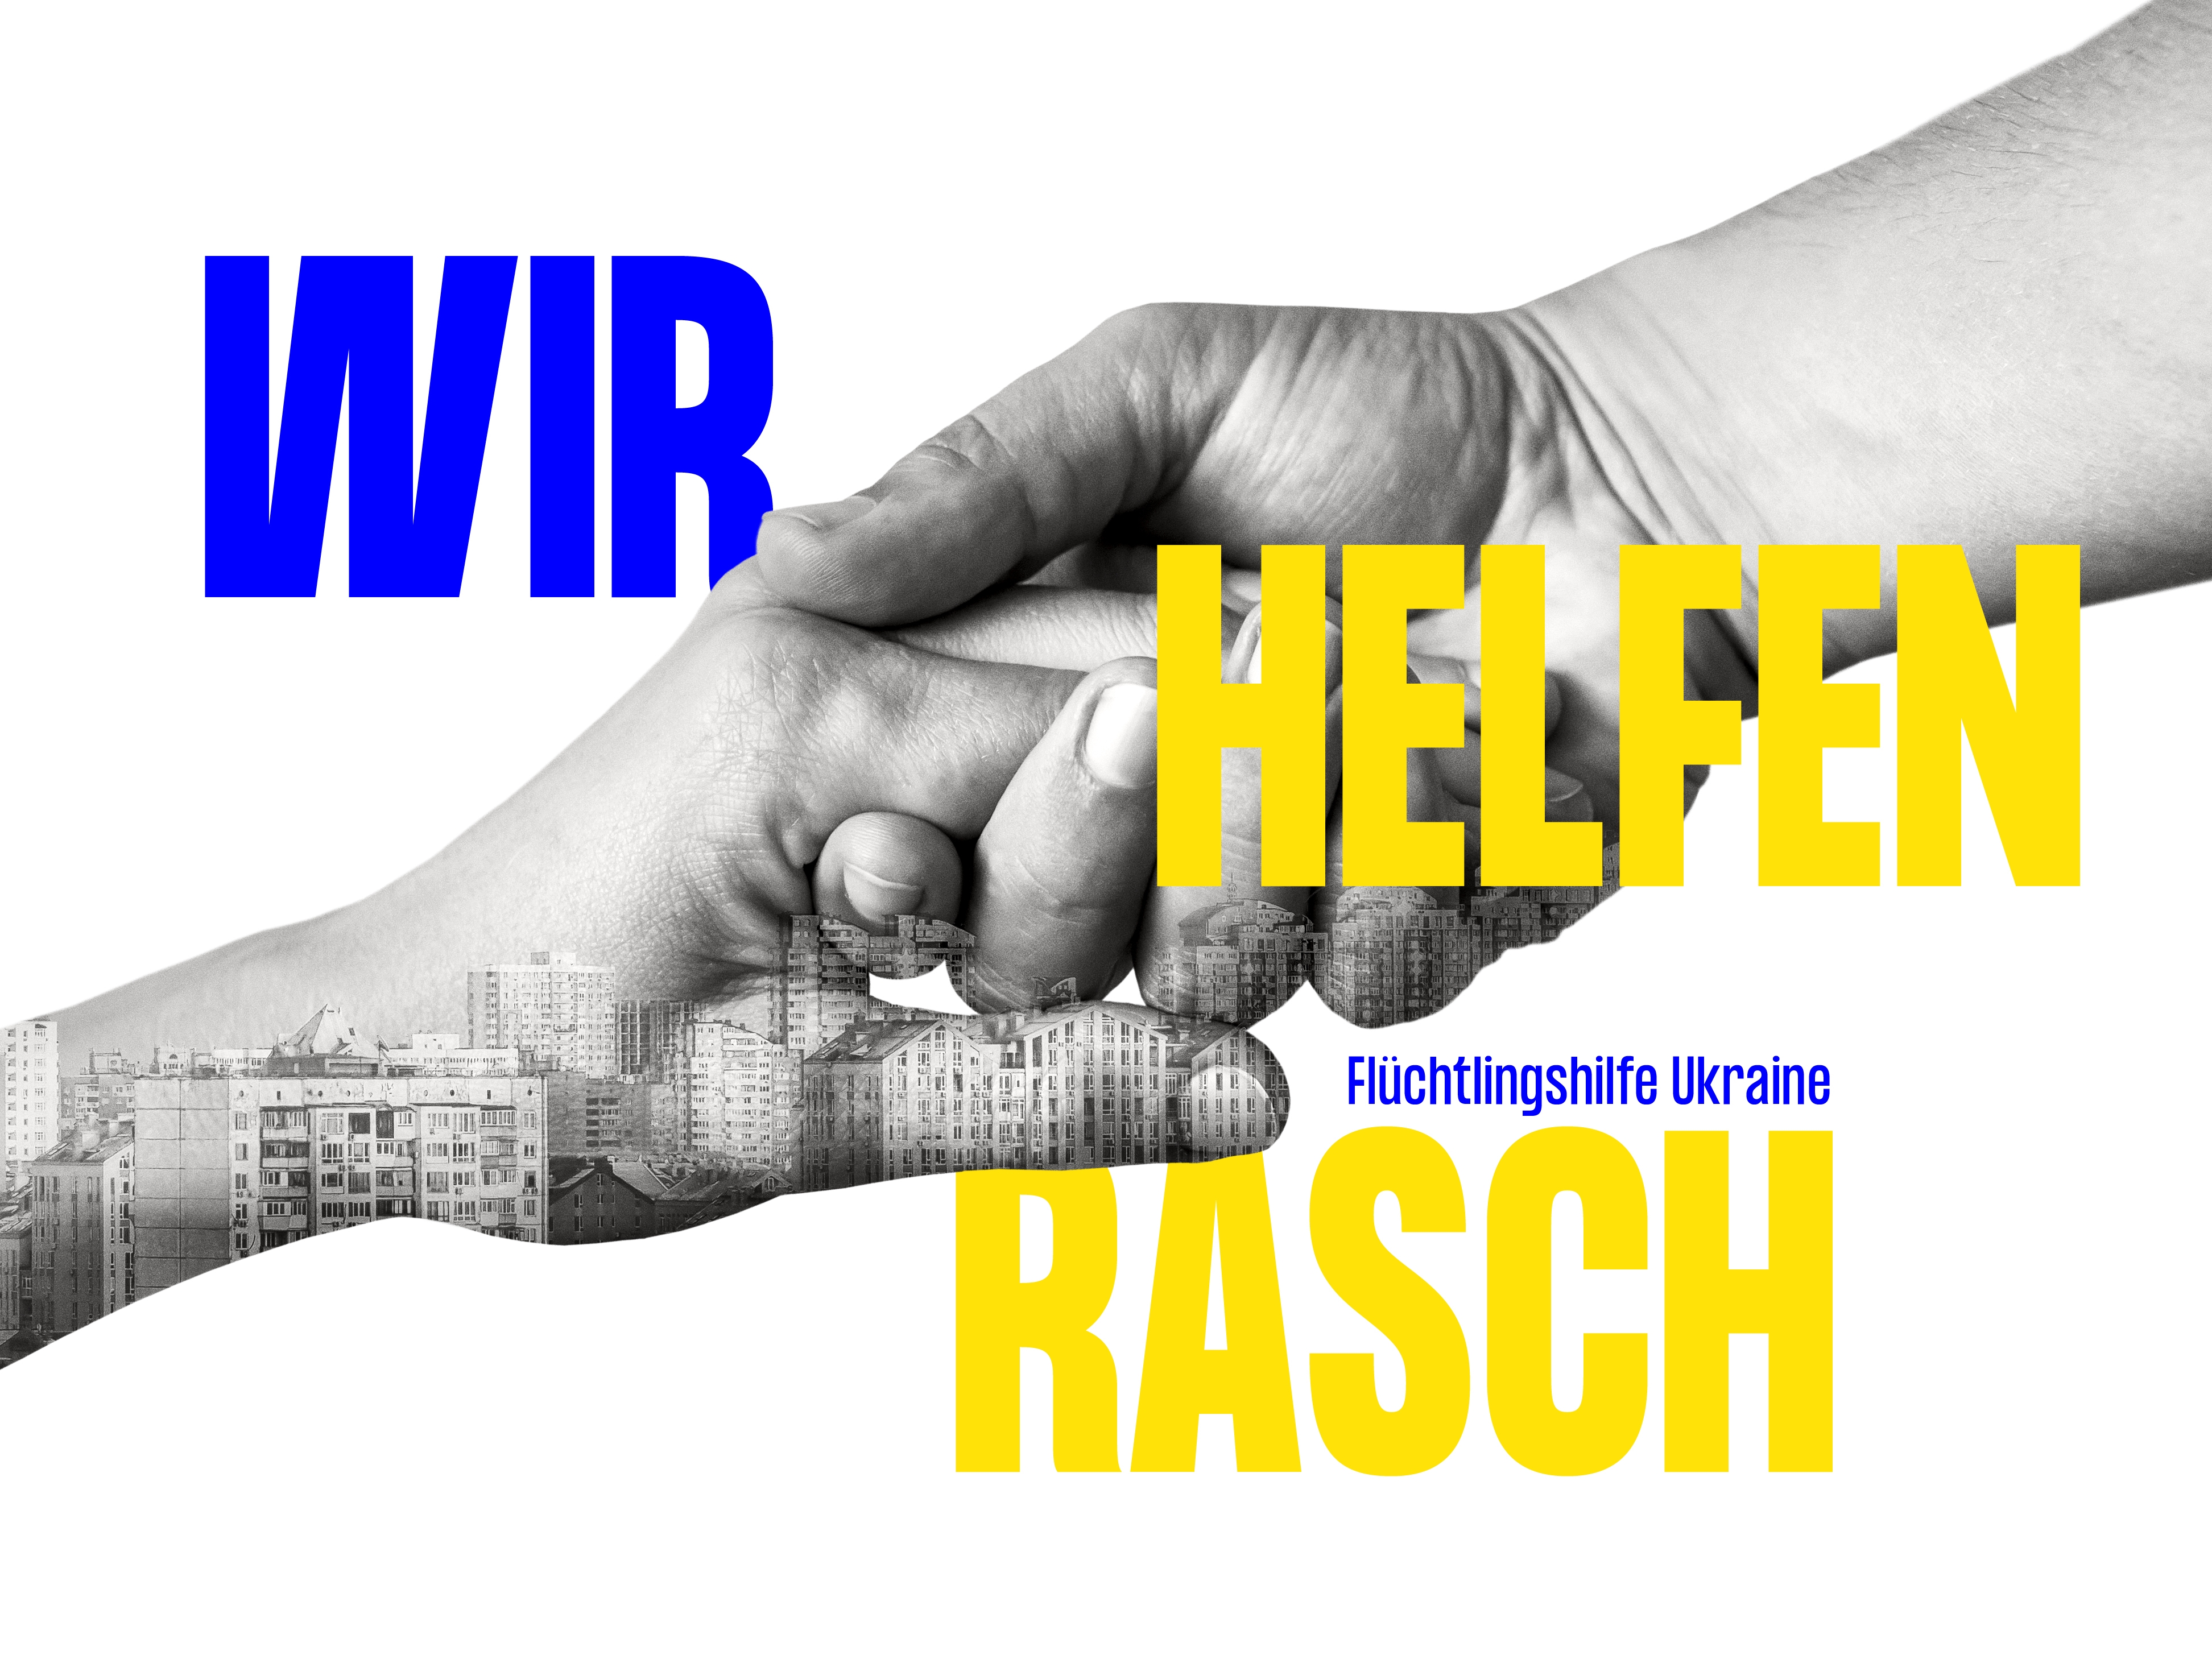 Wir helfen rasch - Flüchtlingshilfe Ukraine © wirhelfenrasch.at